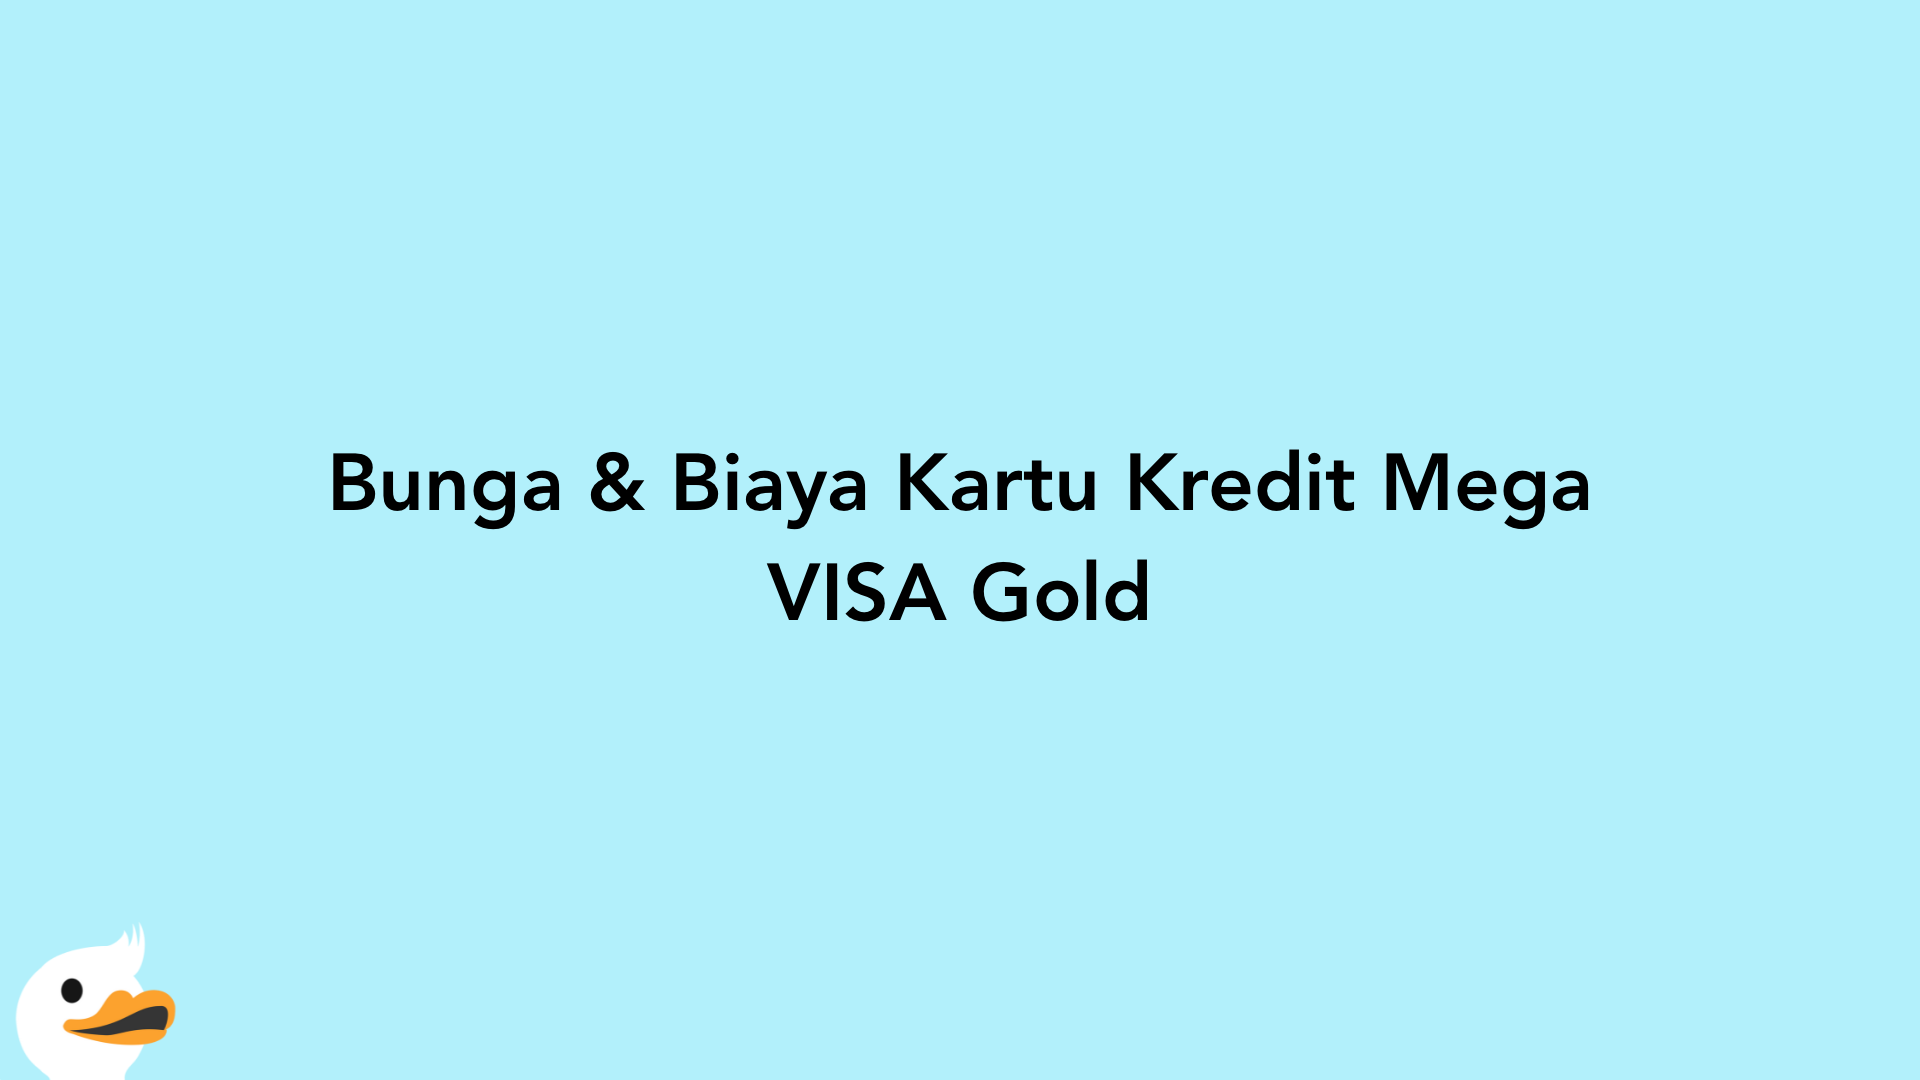 Bunga & Biaya Kartu Kredit Mega VISA Gold